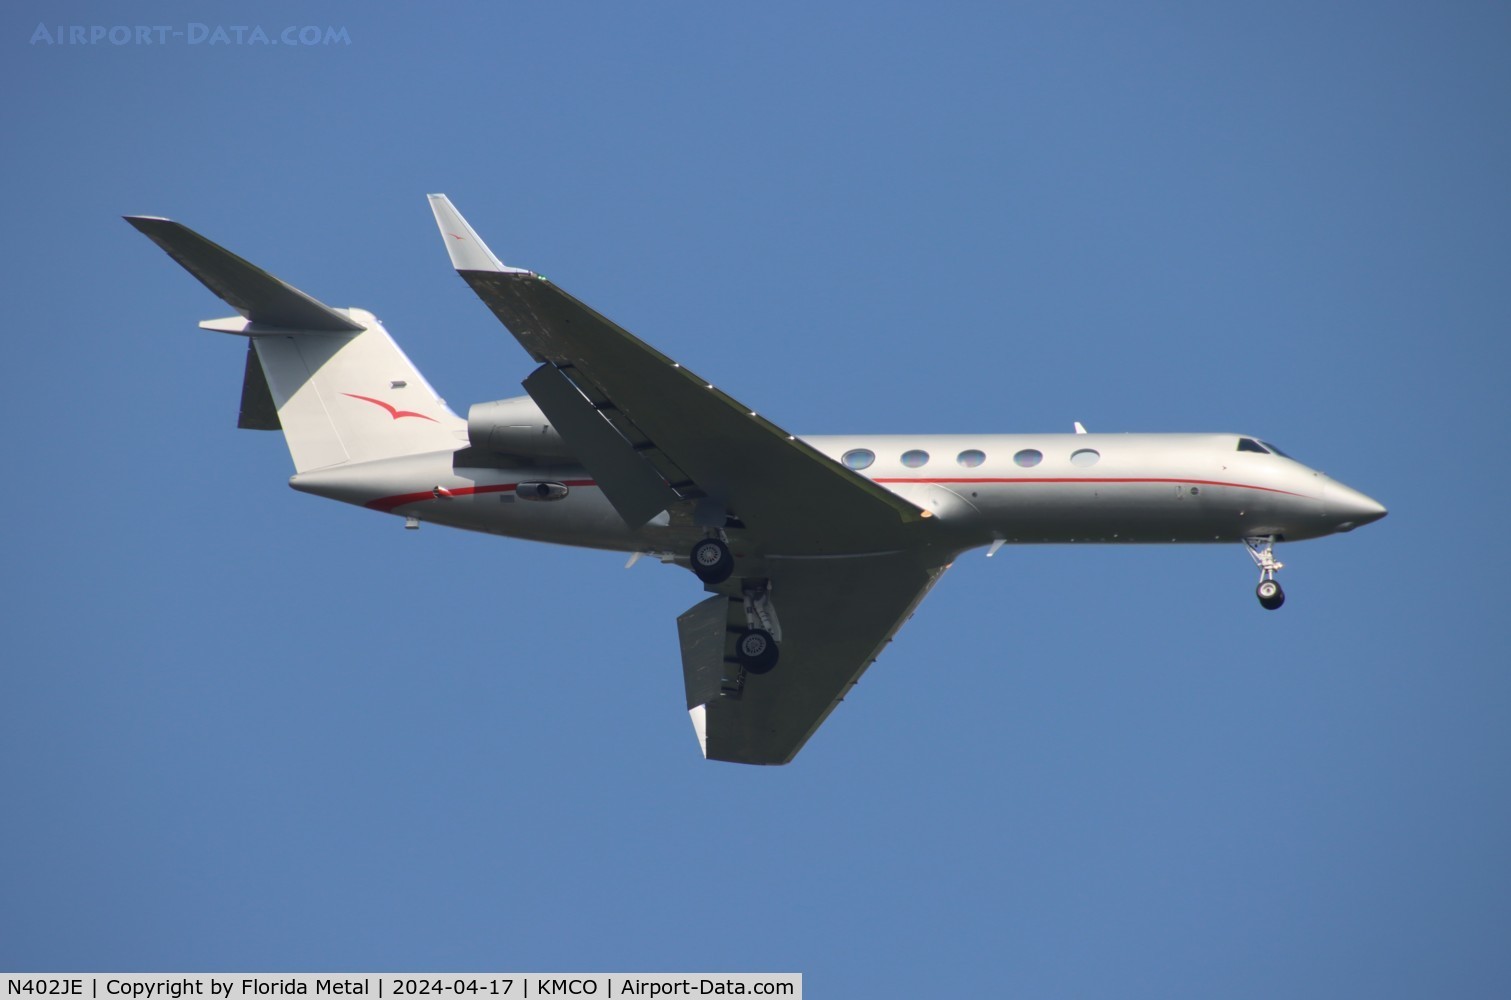 N402JE, 2012 Gulfstream Aerospace GIV-X (G450) C/N 4266, G450 zx TEB-MCO